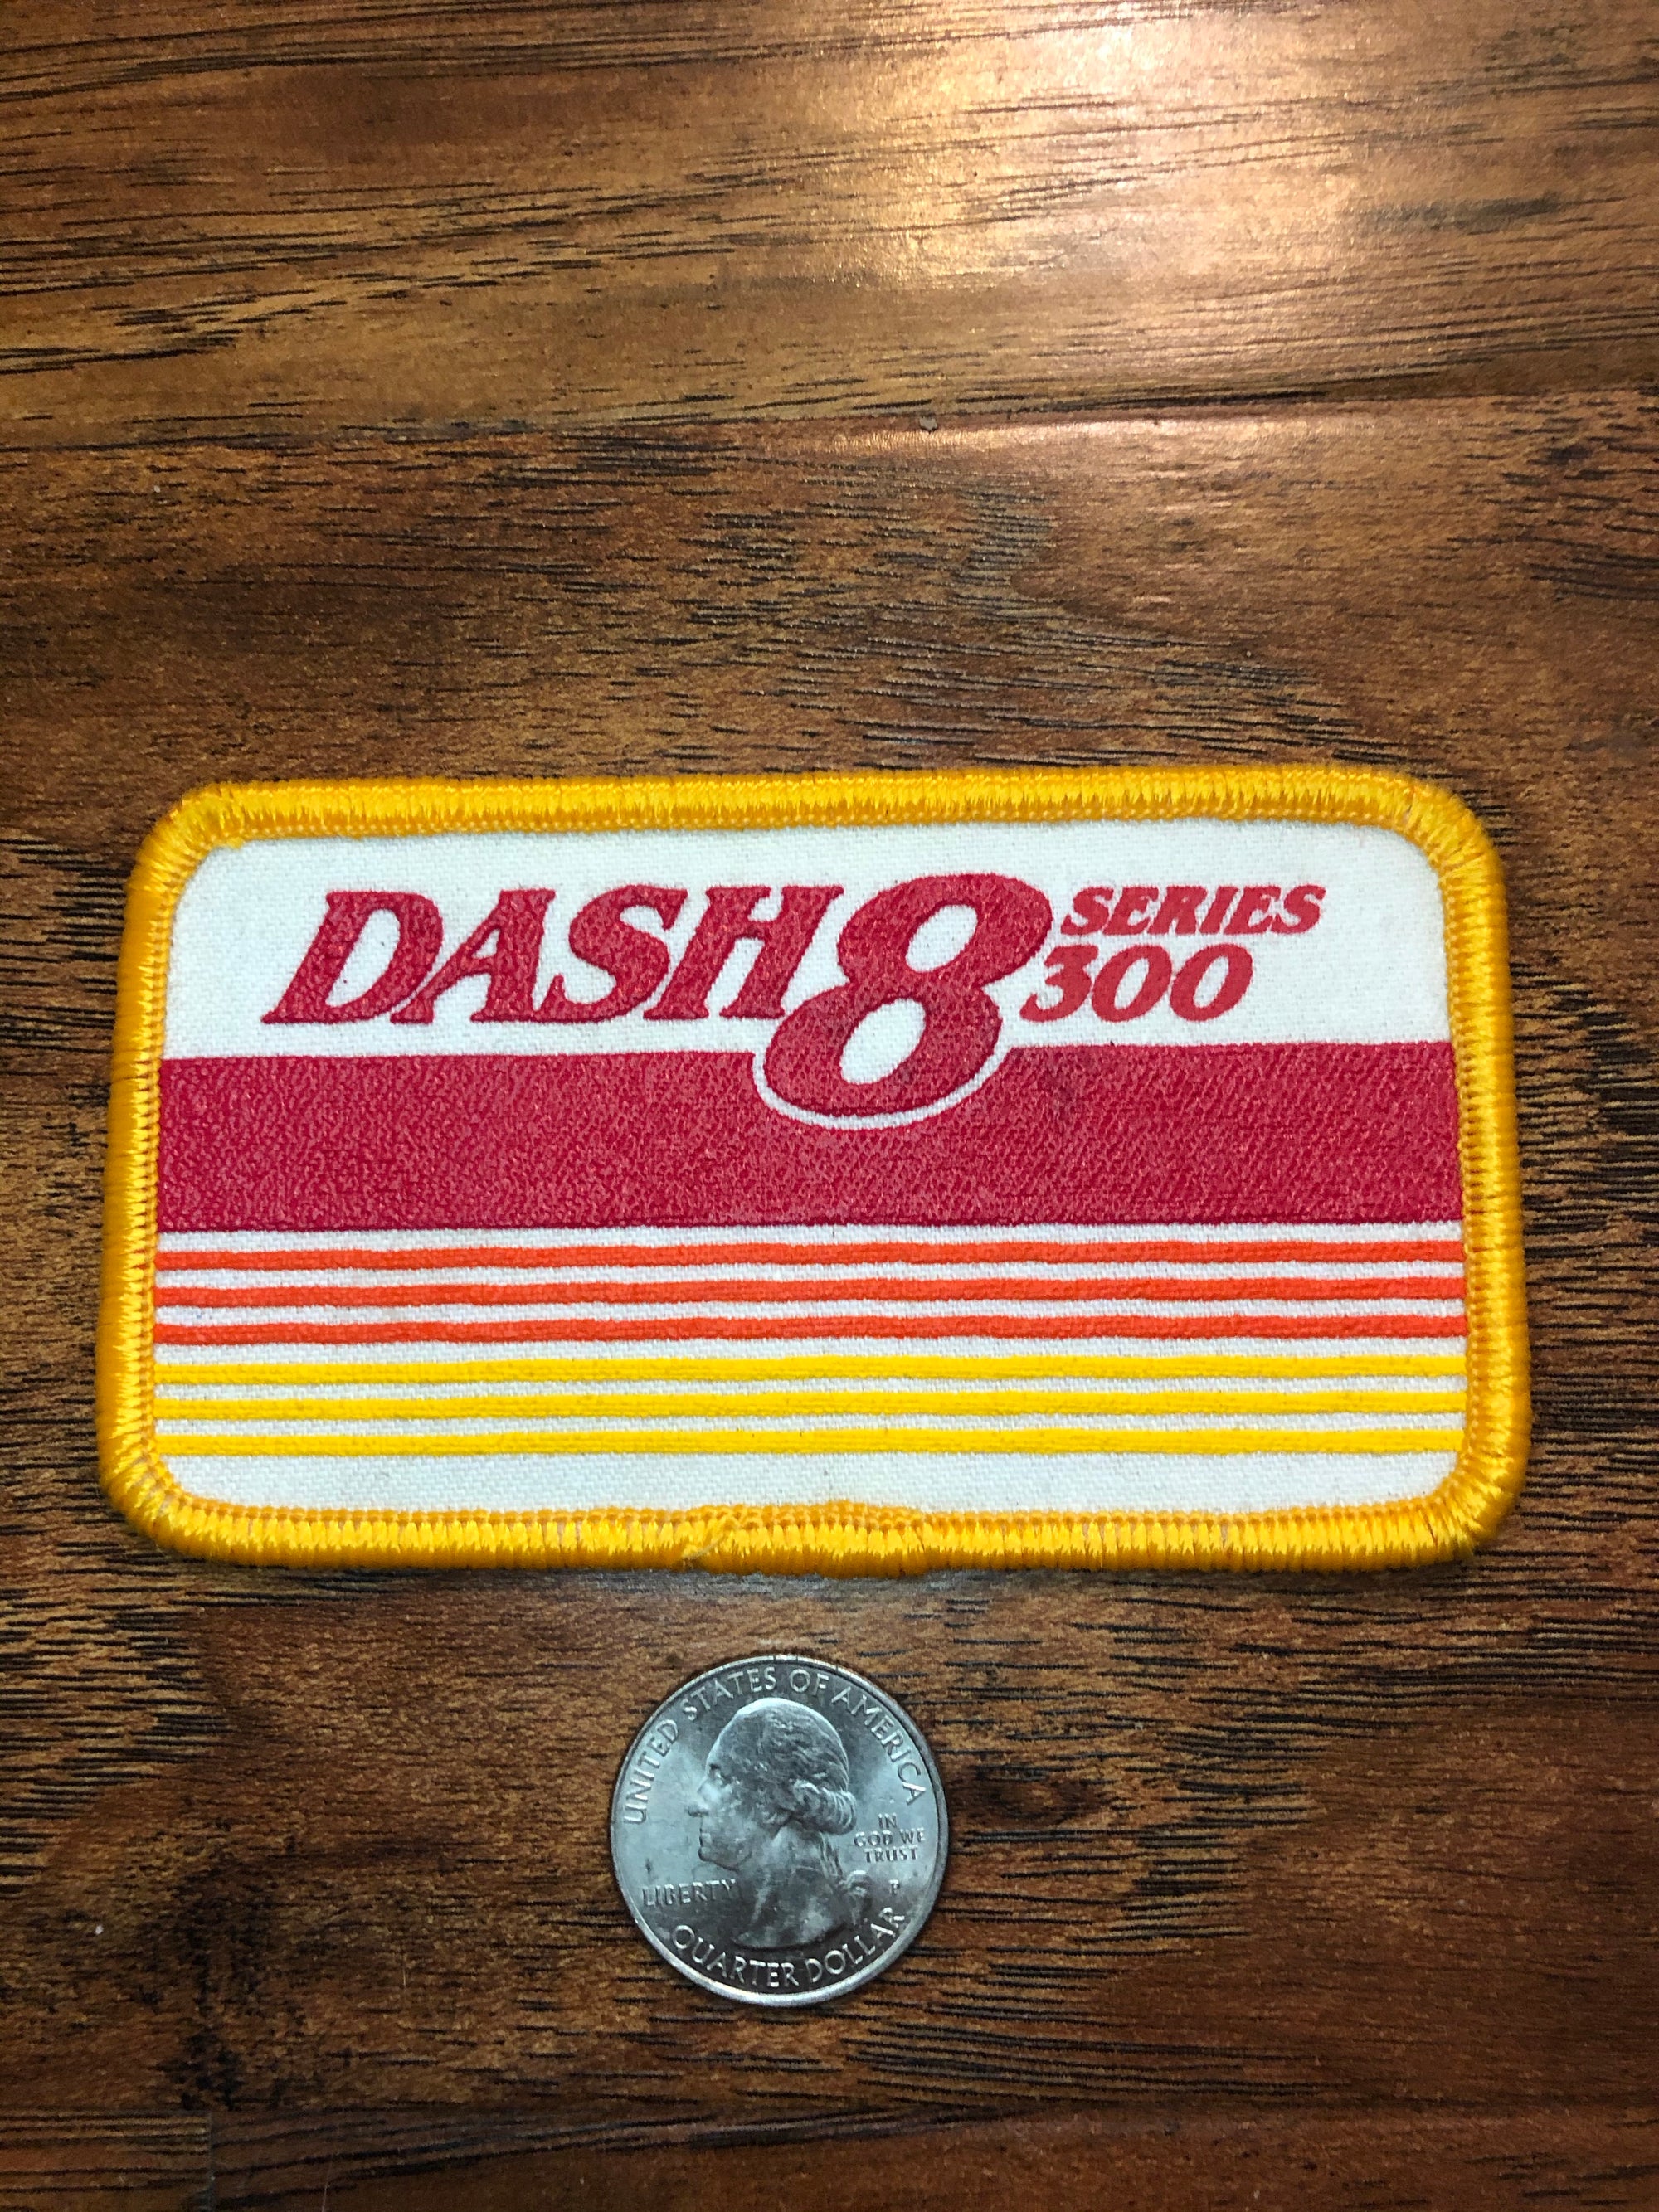 Dash 8 Series 300